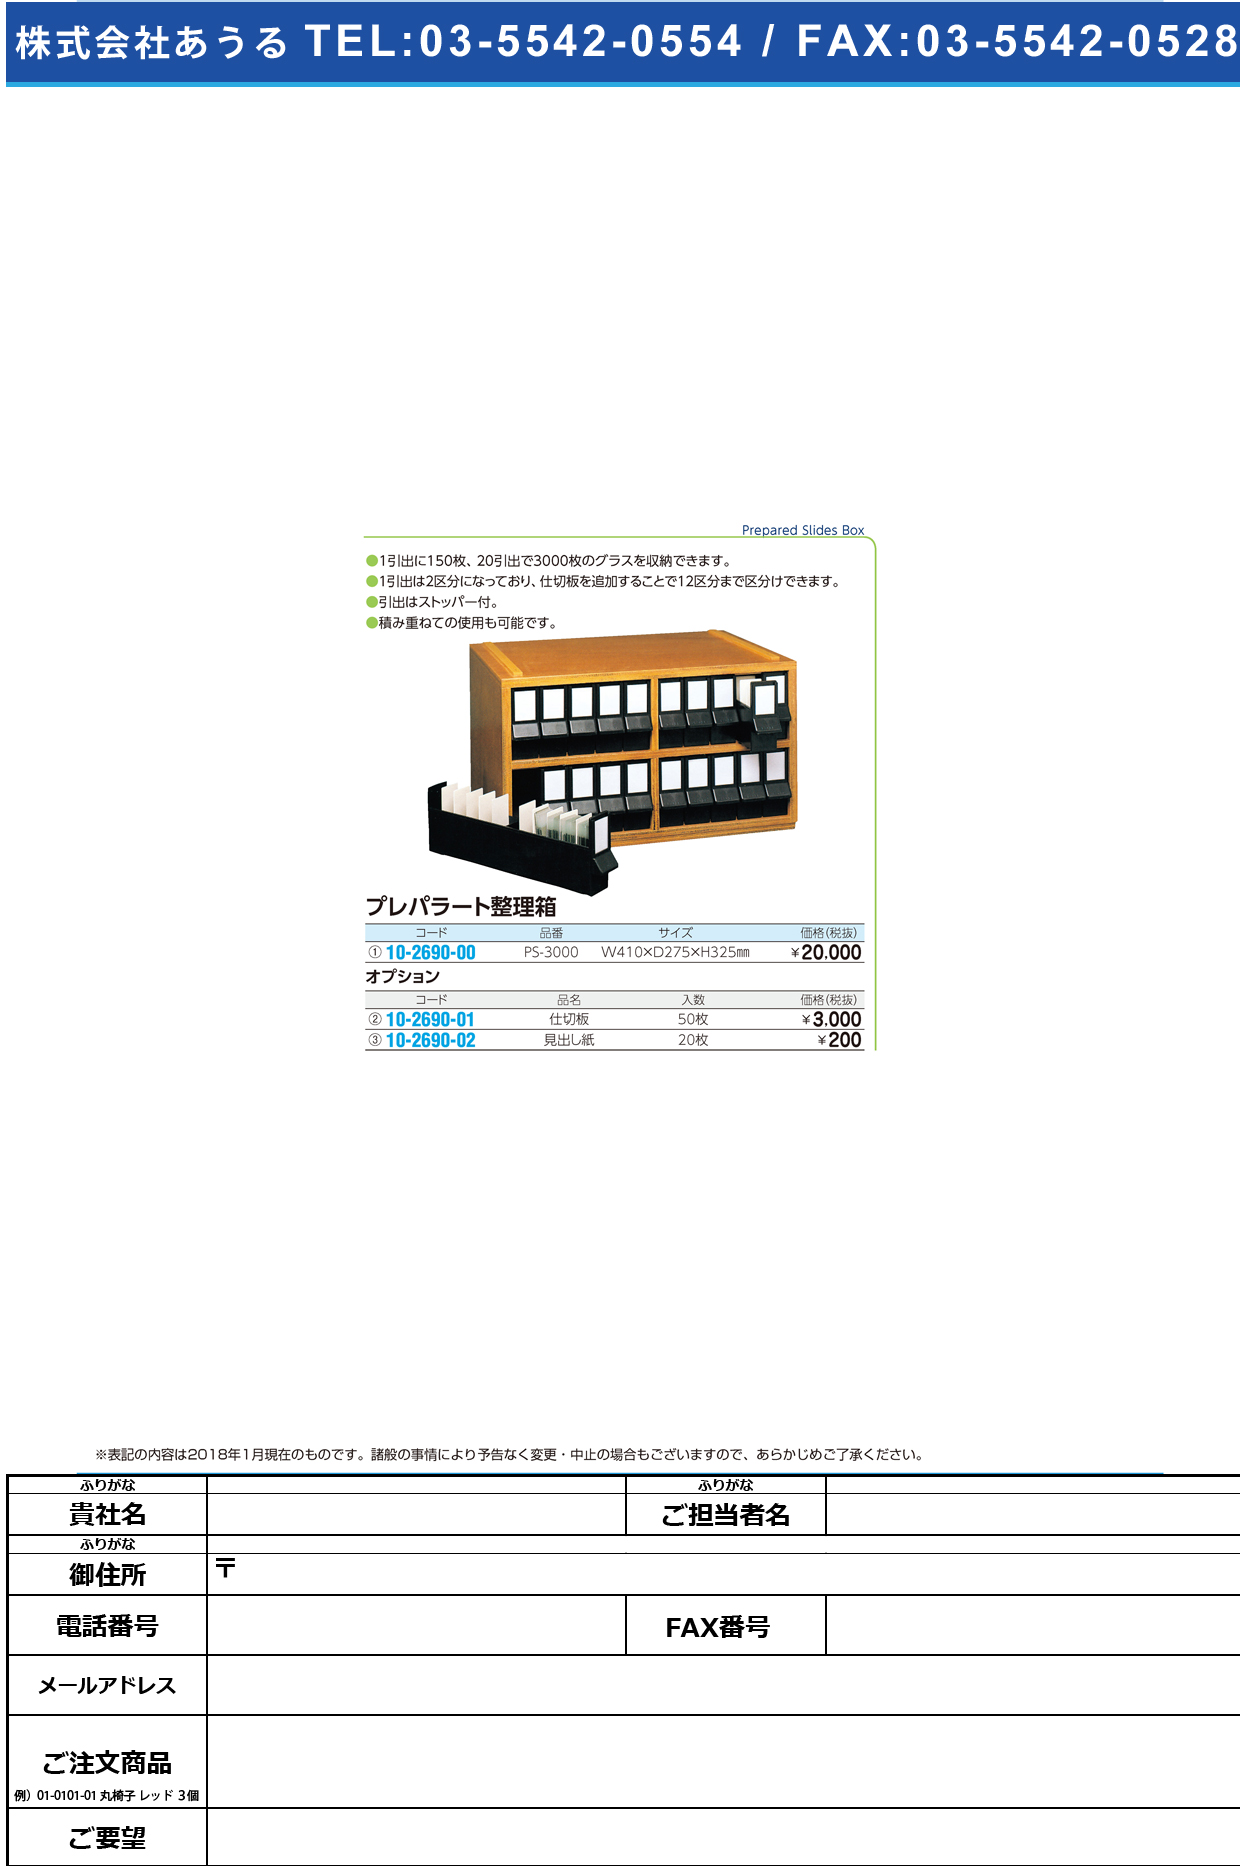 (10-2690-00)プレパラート整理箱（セット） PS-3000 ﾌﾟﾚﾊﾟﾗｰﾄｾｲﾘﾊﾞｺ【1台単位】【2018年カタログ商品】